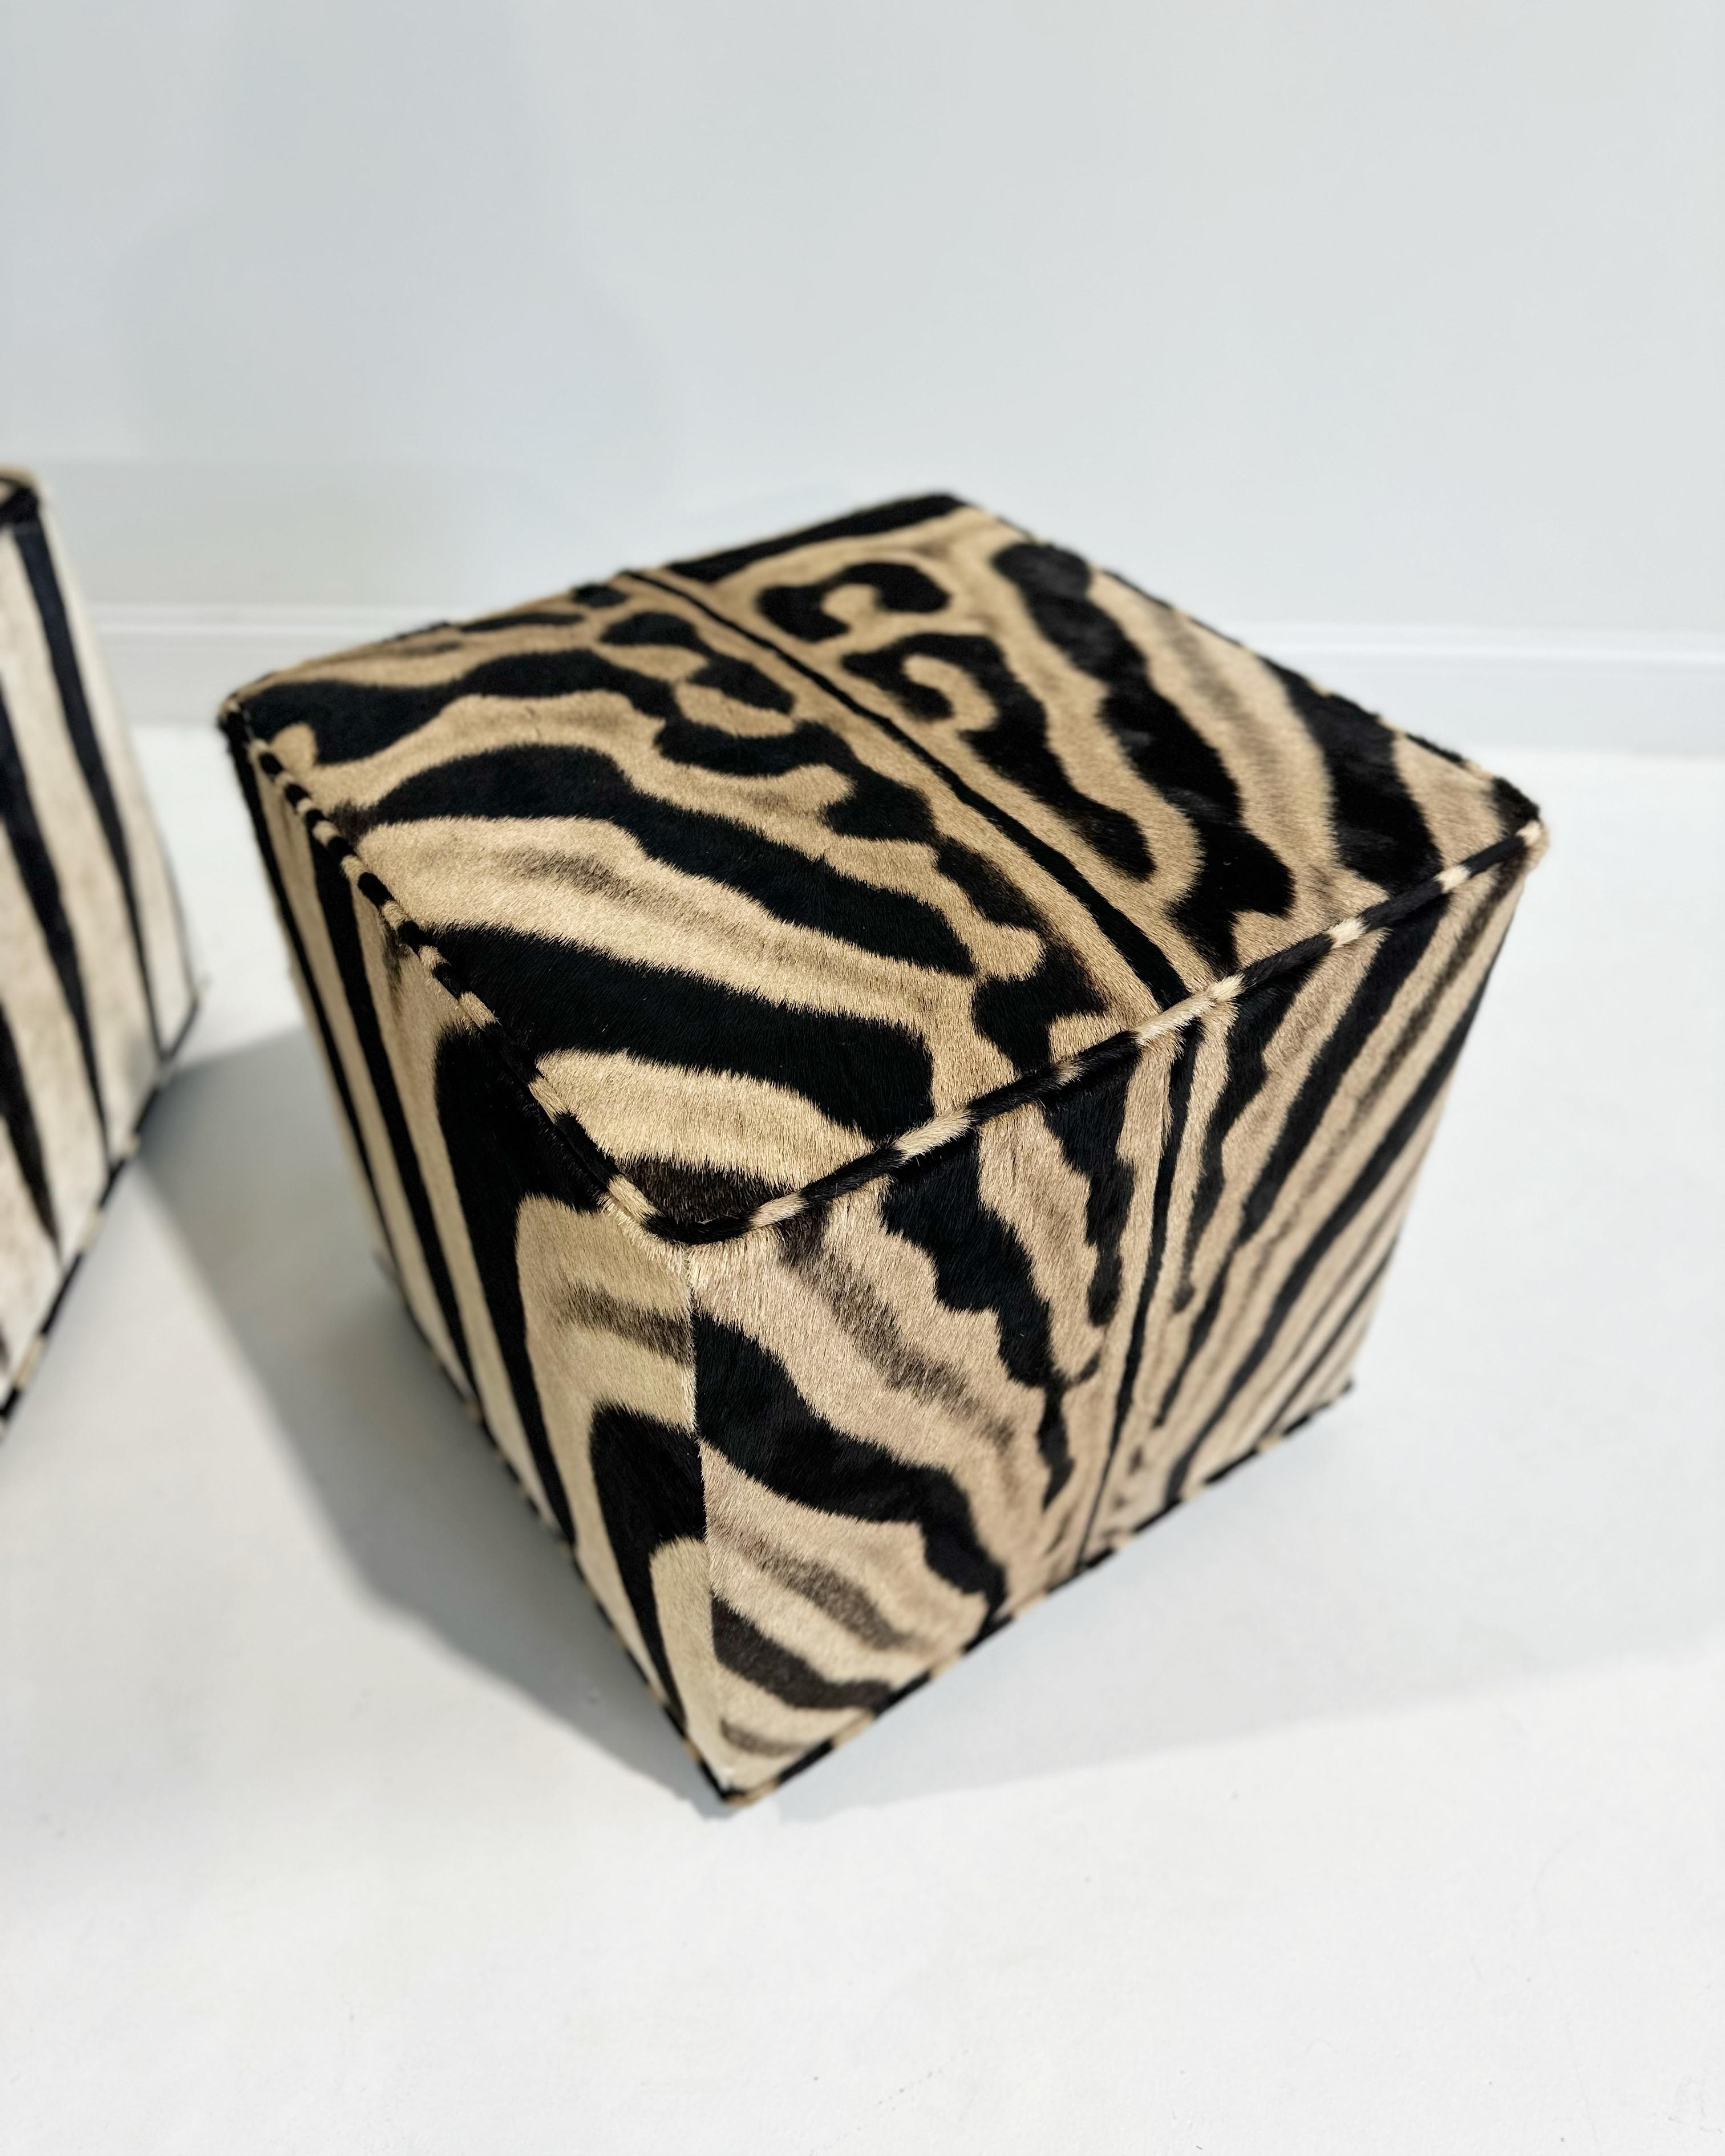 Fait partie de la Collection SYTH Originals. Le pouf Forsyth Cube est conçu et fabriqué à la main à partir de nos peaux de zèbre. Il s'agit d'une pièce polyvalente pour n'importe quelle pièce, ajoutant une texture naturelle et un motif. La table